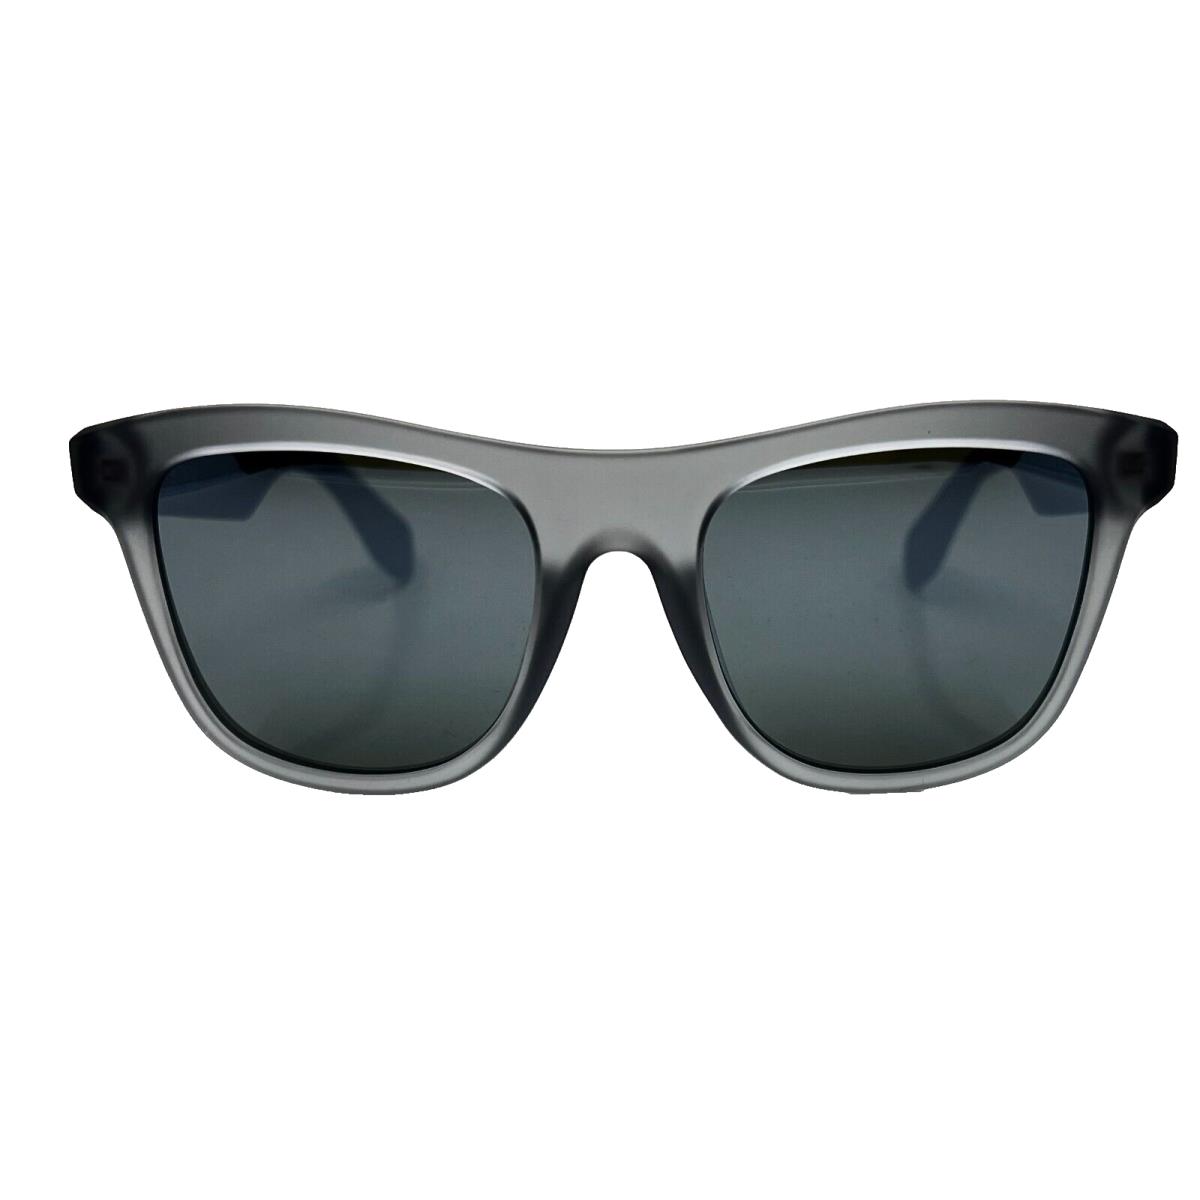 Adidas Originals - OR0057 20Q 53/20/145 - Grey - Sunglasses Case - Frame: Gray, Lens: Green